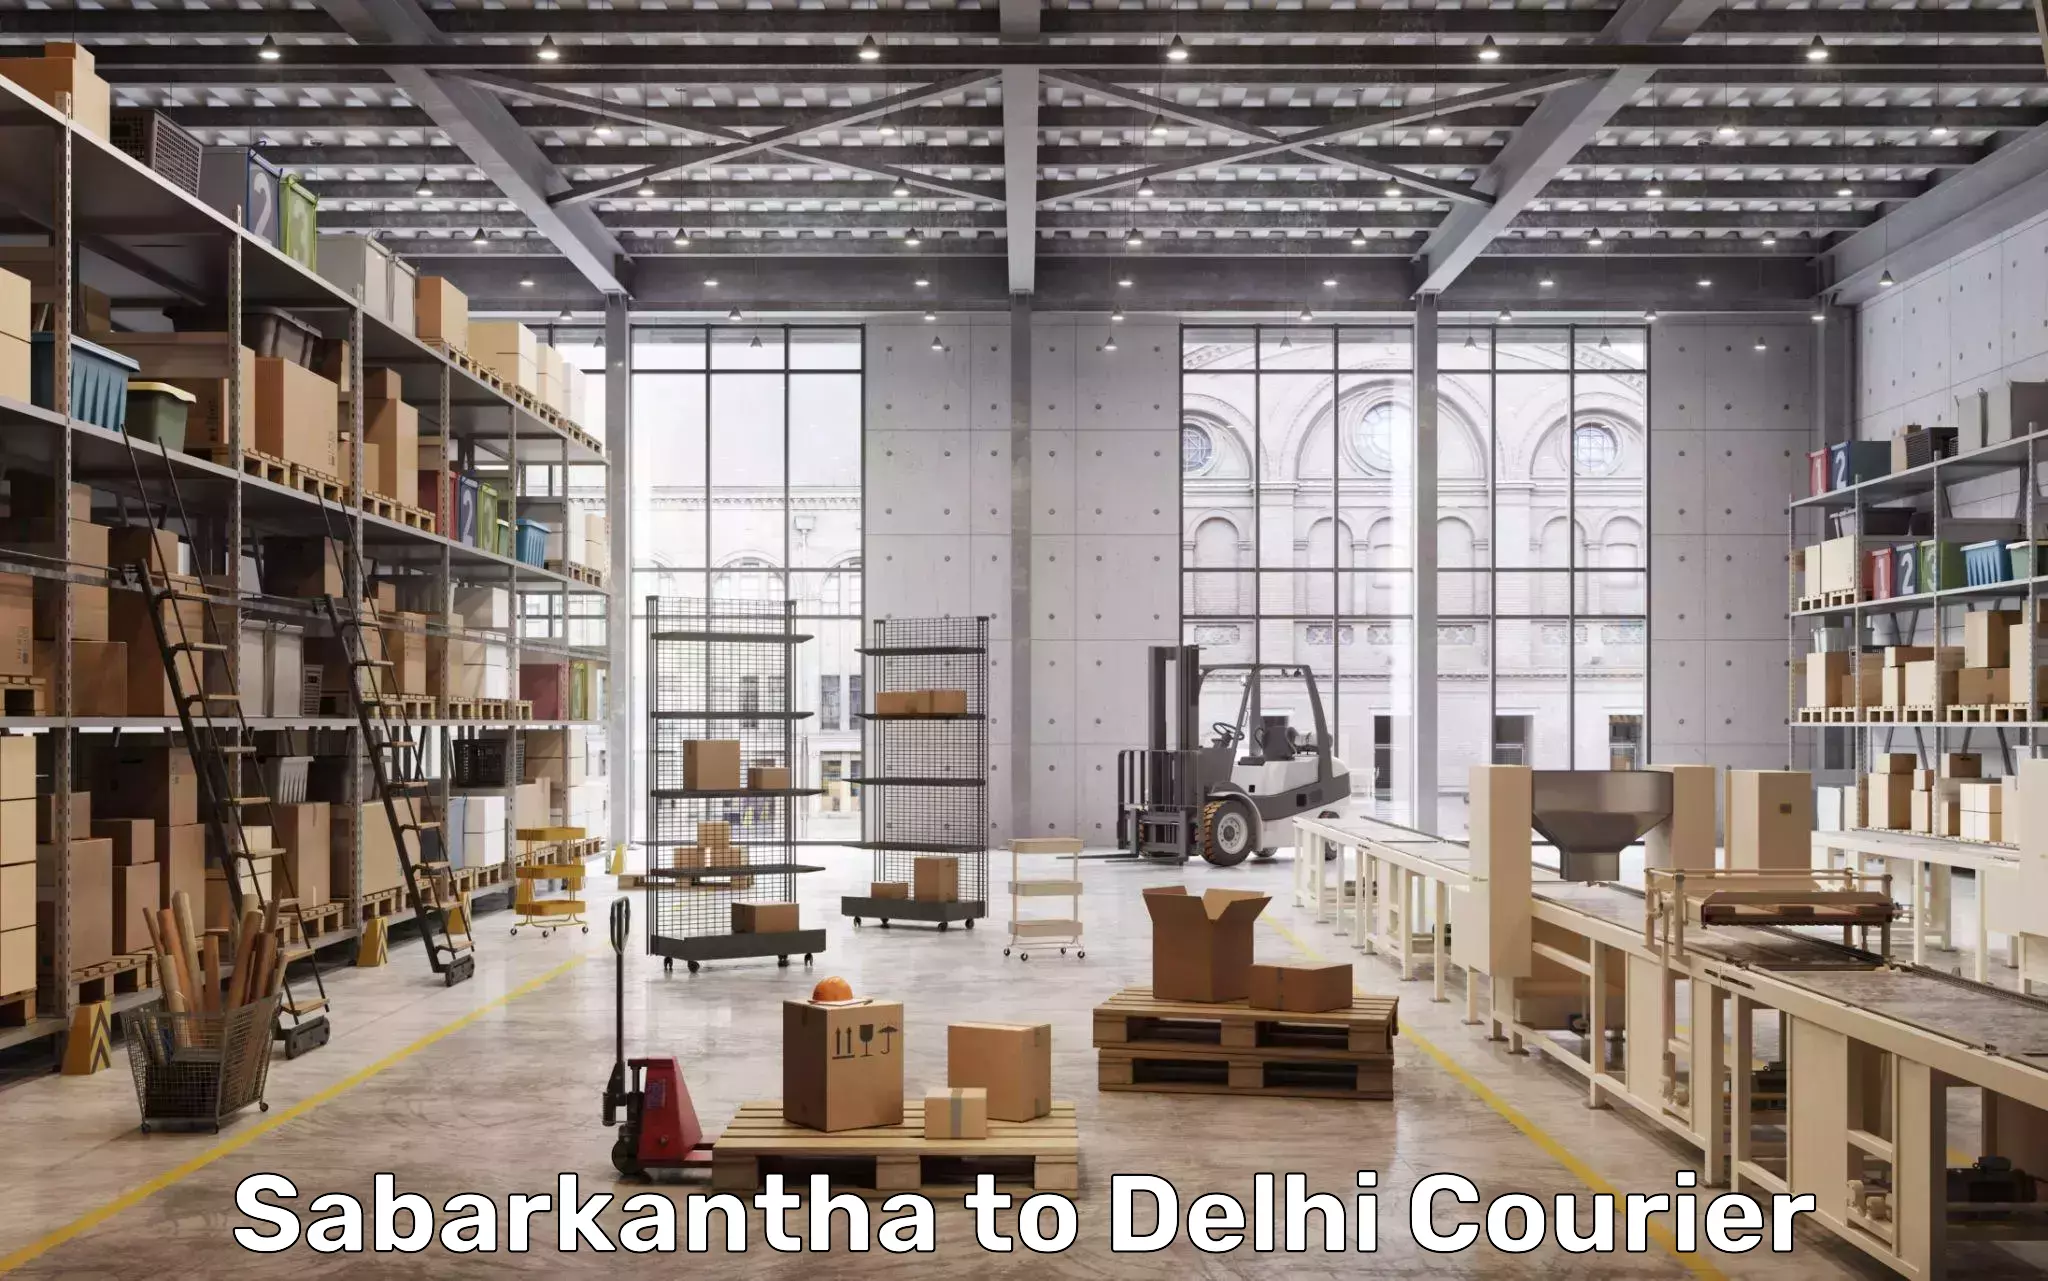 Baggage delivery management Sabarkantha to Delhi